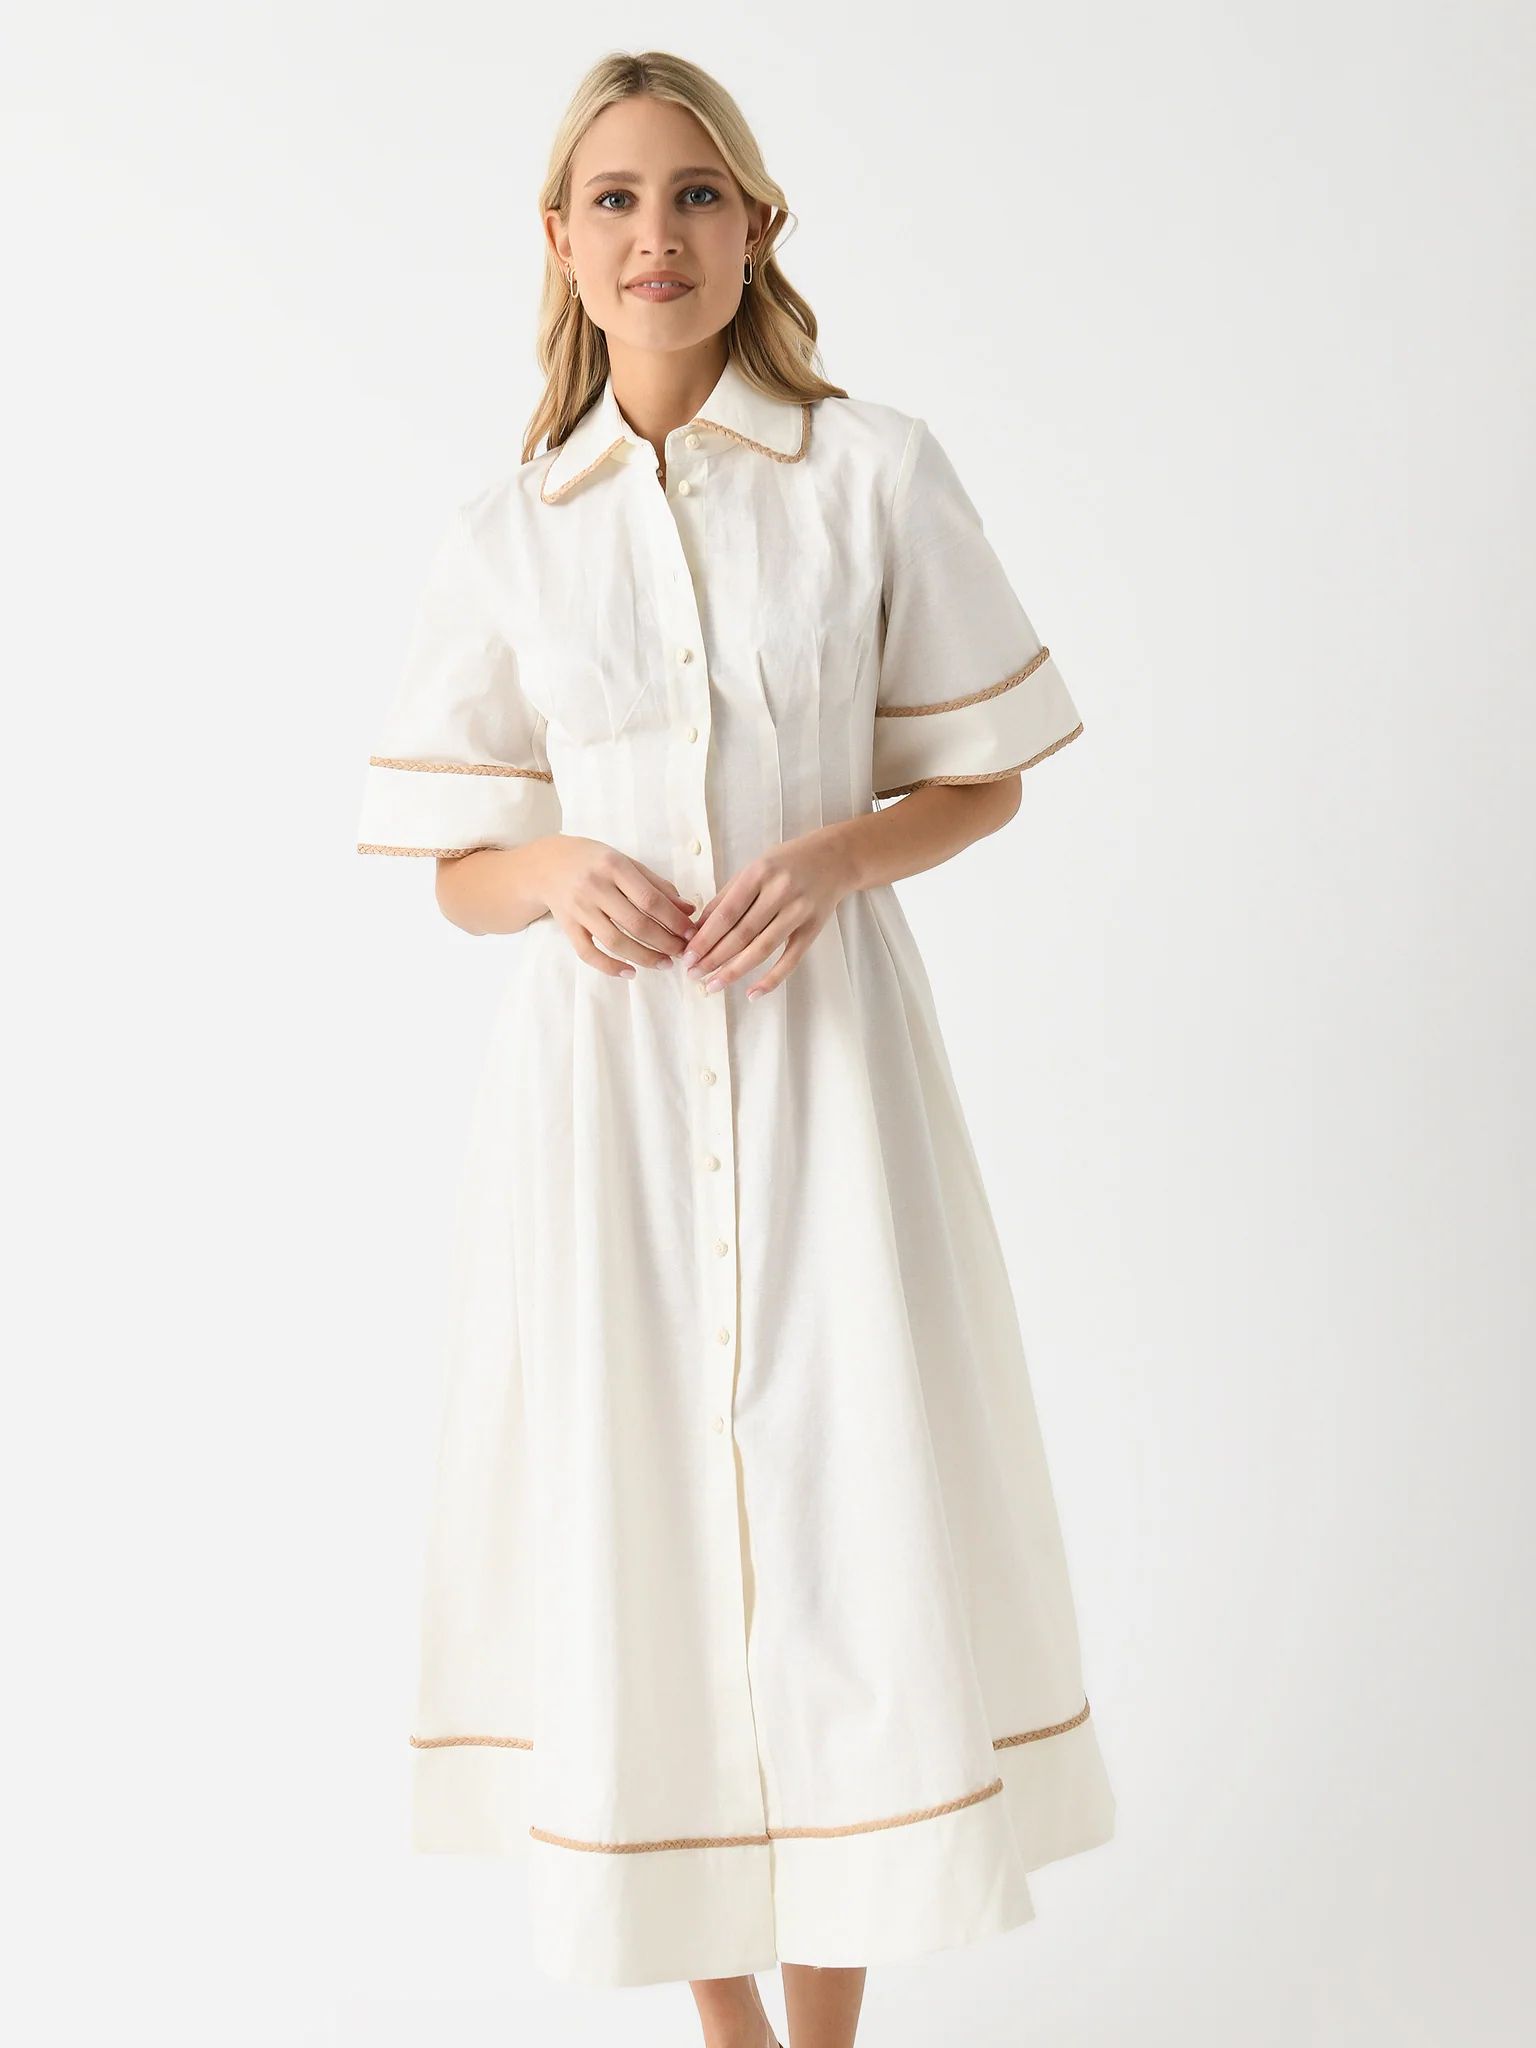 CLEA
                      
                     Women's Lucia Shirt Dress | Saint Bernard